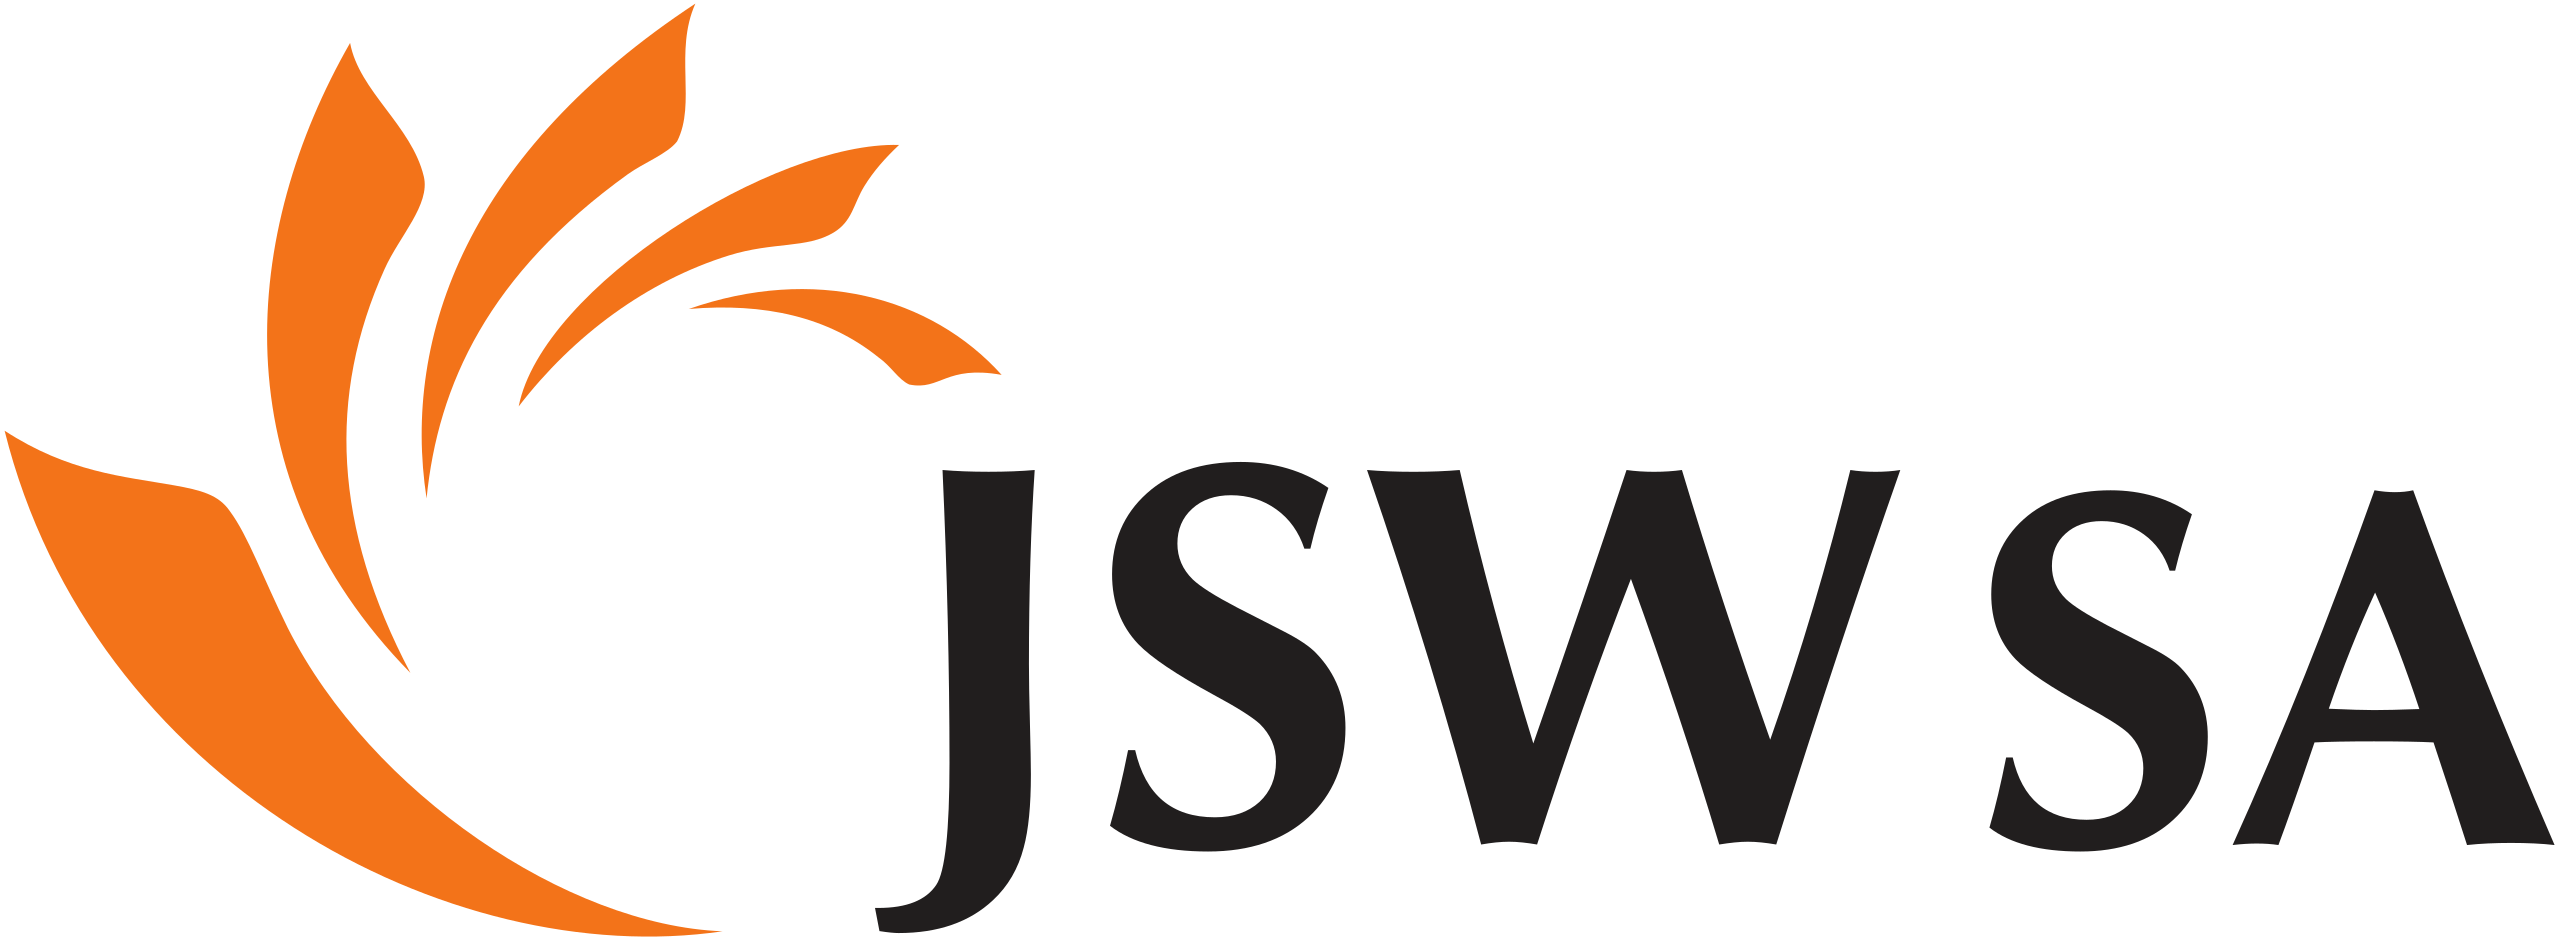 Jastrzębska Spółka Węglowa/JSW 